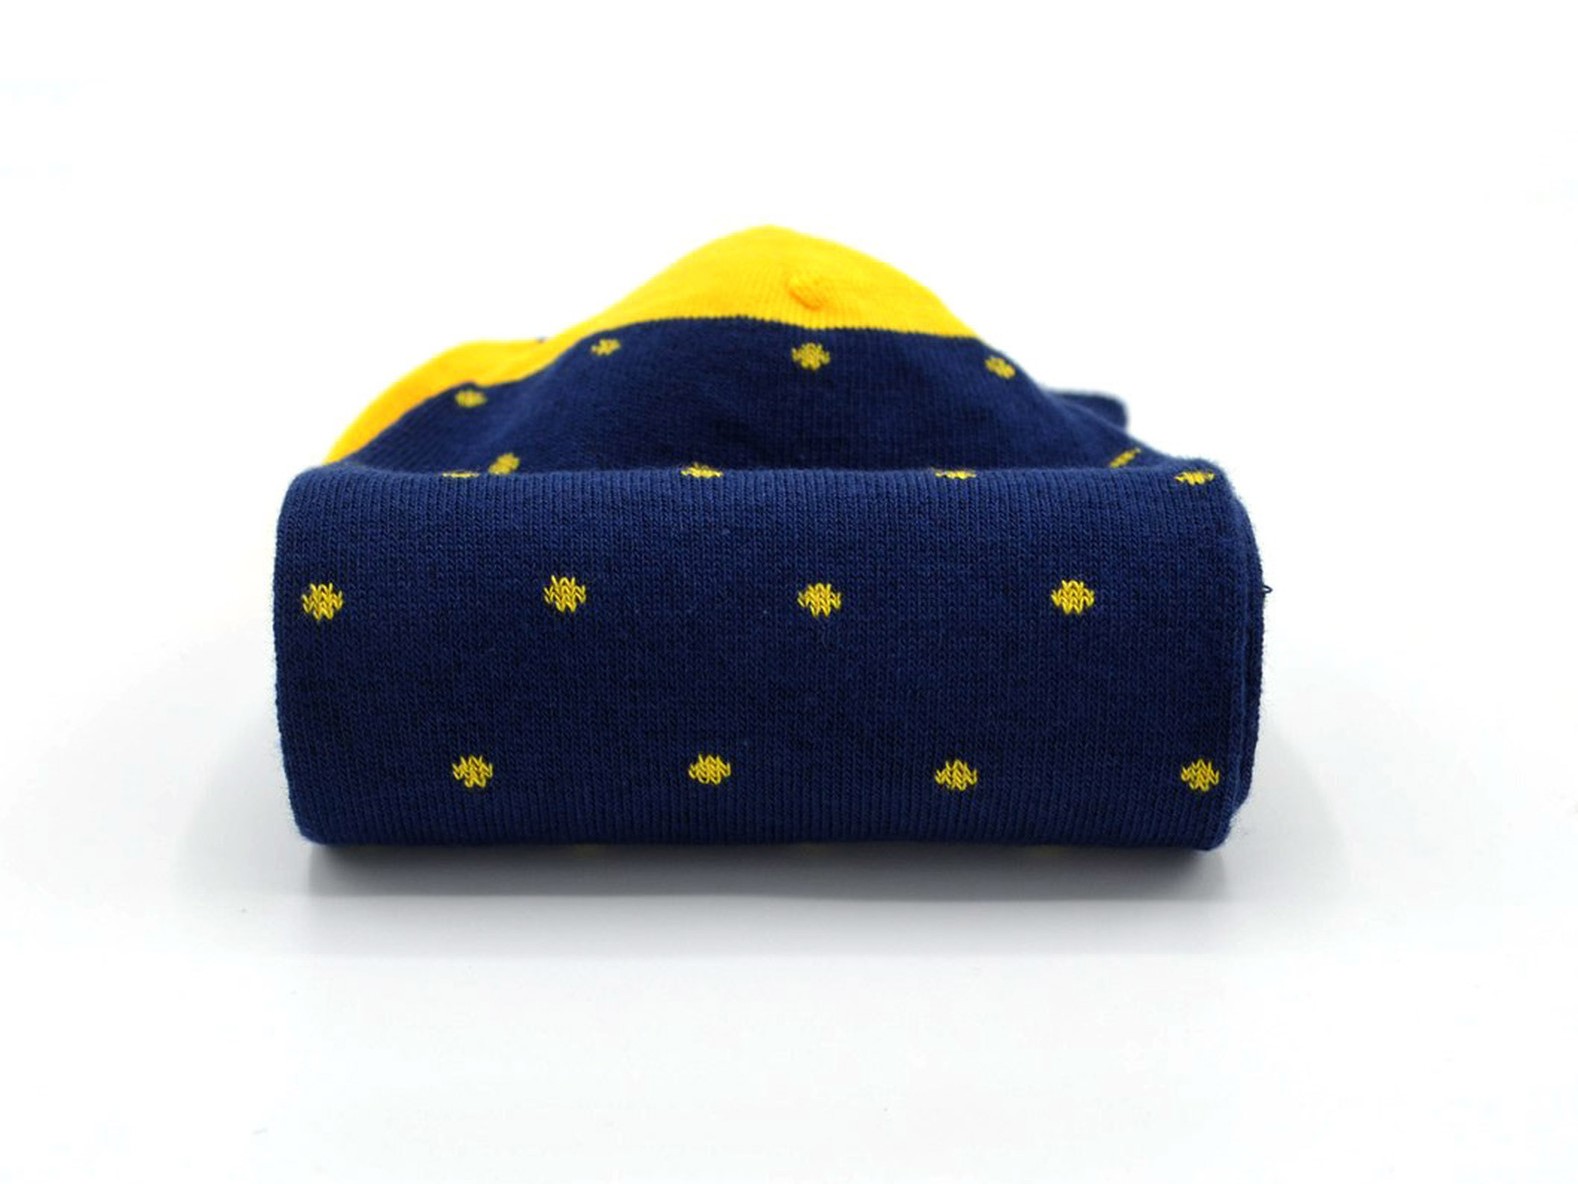 socquettes fantaisie à motifs en coton hommes femmes bleu marine pois jaunes 